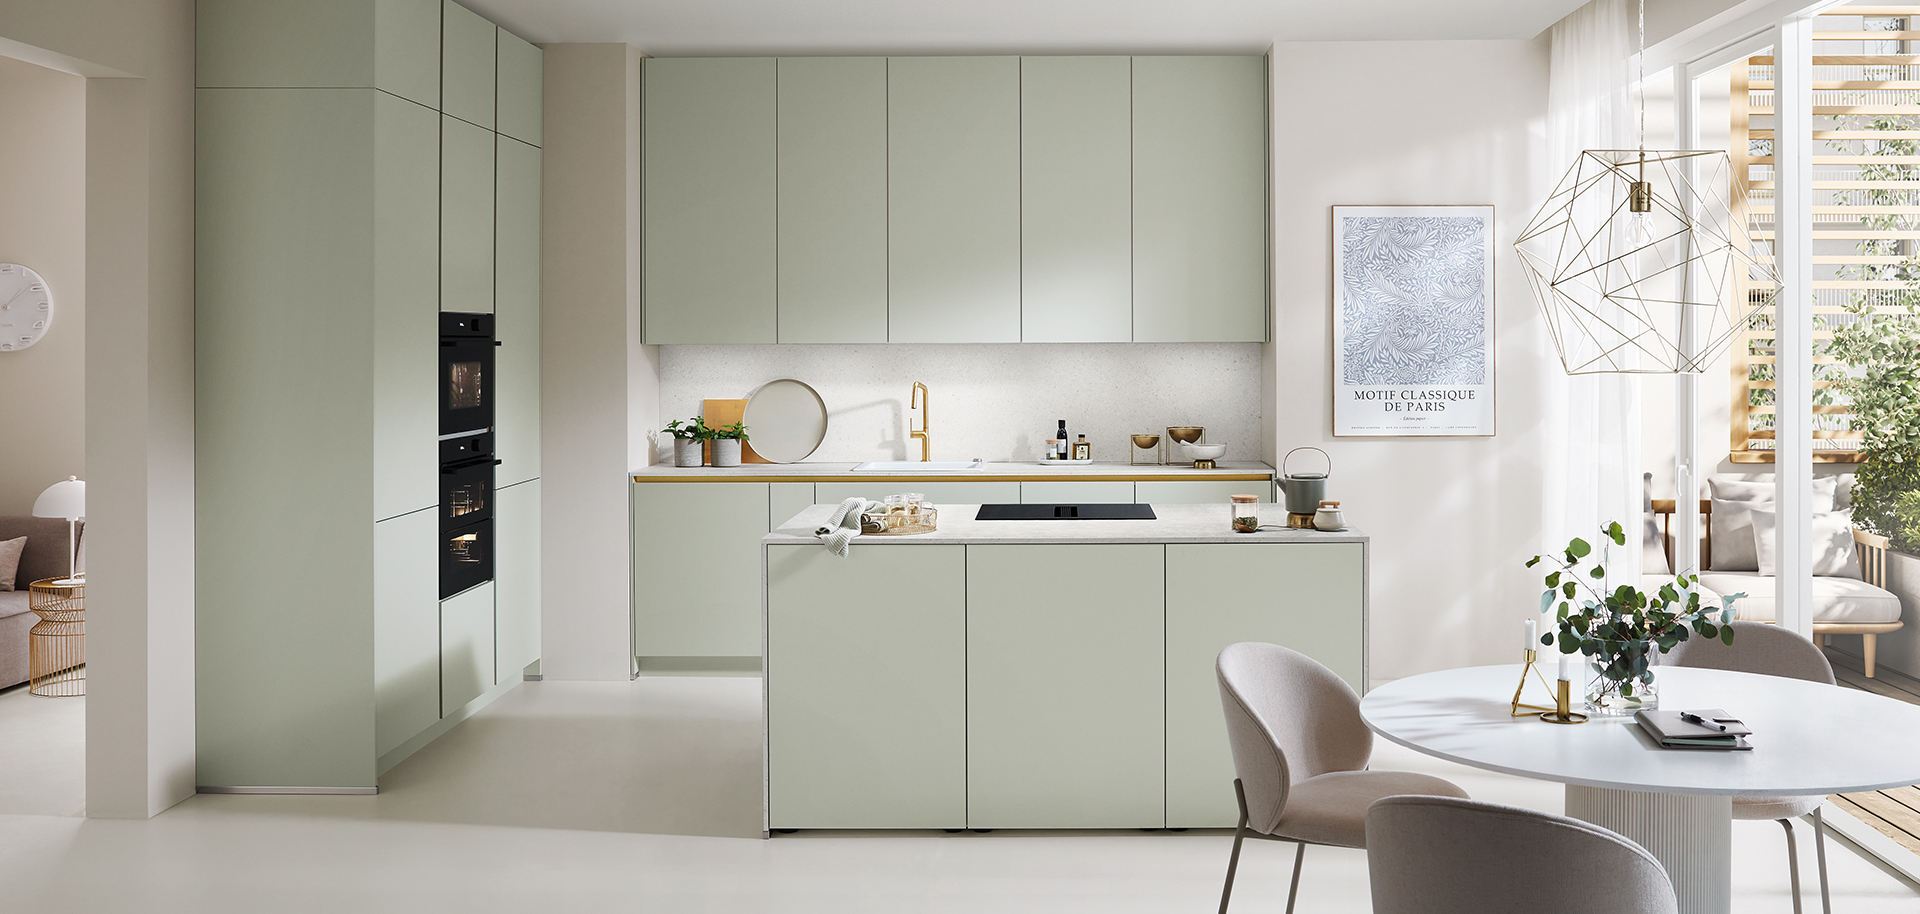 Moderne keuken met pastelgroene kasten, geïntegreerde apparaten en een gezellig eetgedeelte met een minimalistisch ontwerp en een lichte, luchtige sfeer.